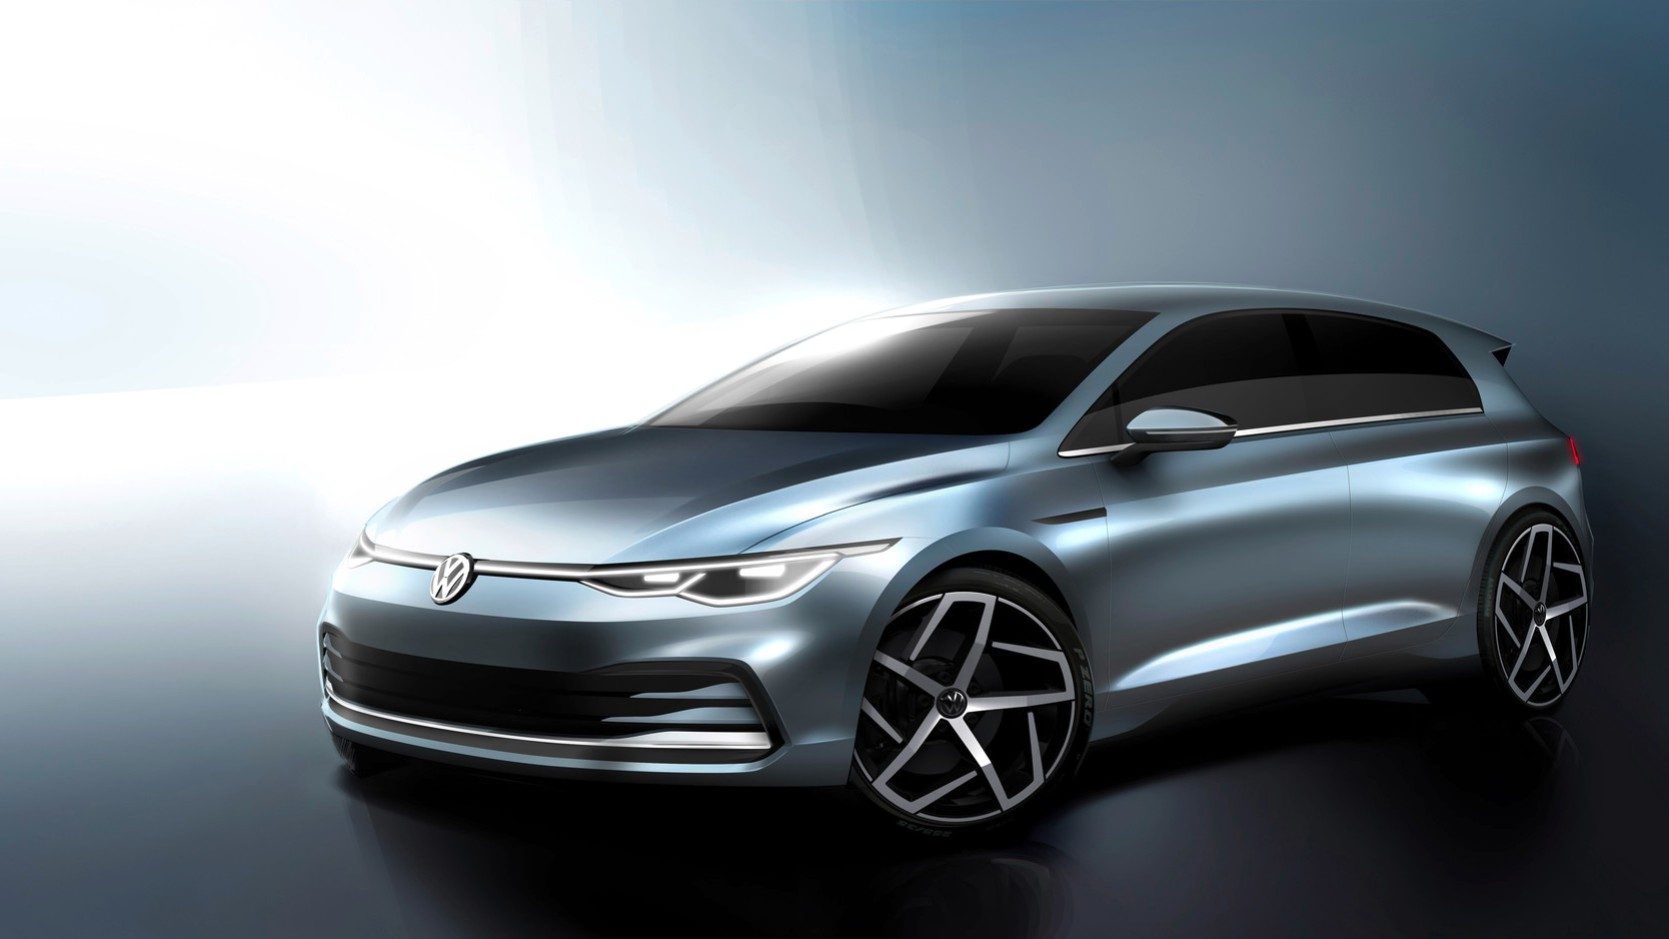 Designskizze des neuen Volkswagen Golf in Grau- und Silbertönen